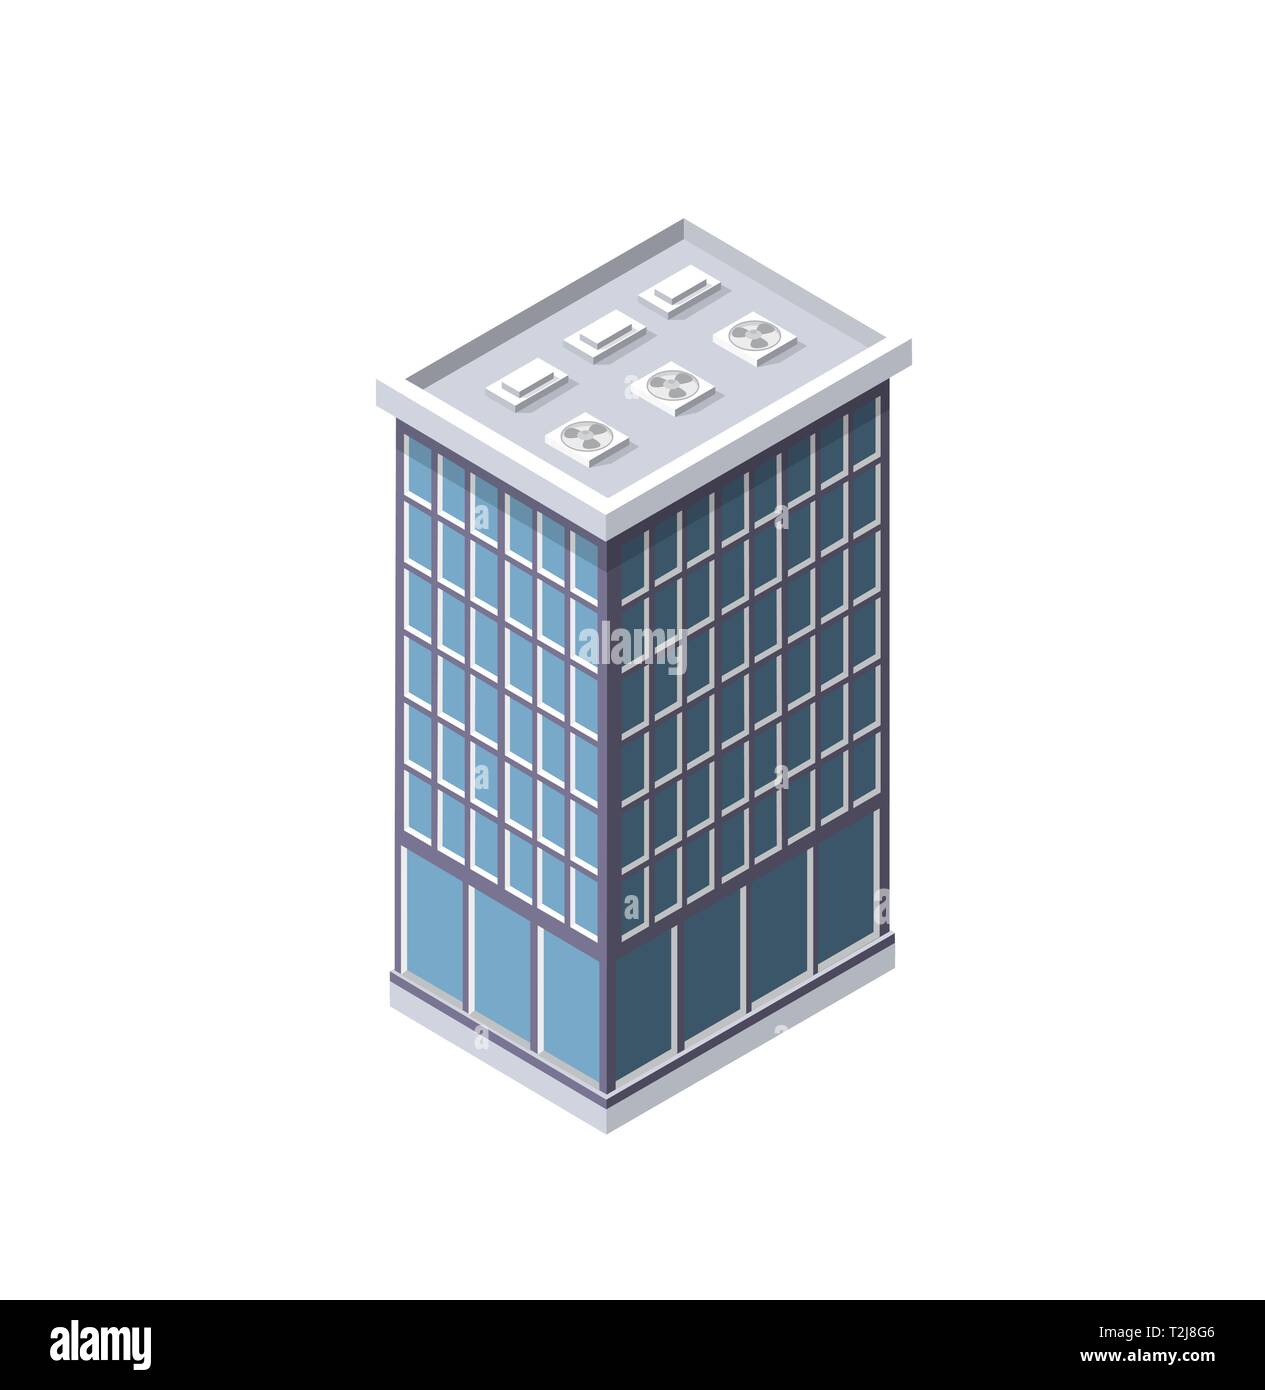 Die Intelligenz Gebäude Hochhaus Architektur ist eine Idee der Technologie Business Equipment Flat Style urban isometrische Darstellung Stock Vektor